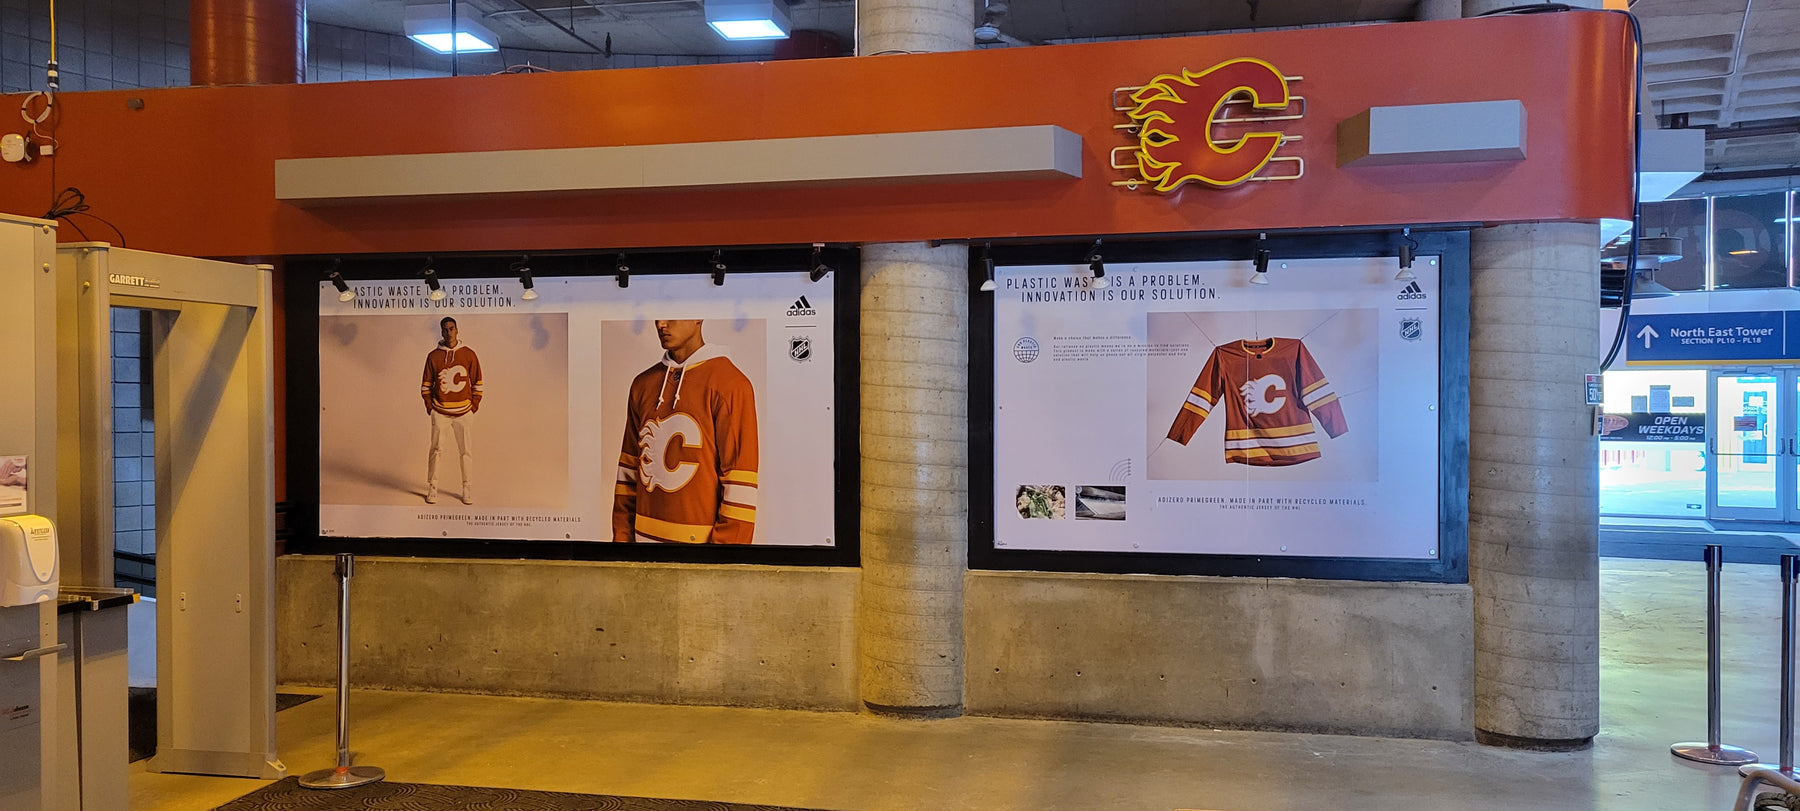 Adidas X Calgary Flames print at the Scotiabank Saddledome.